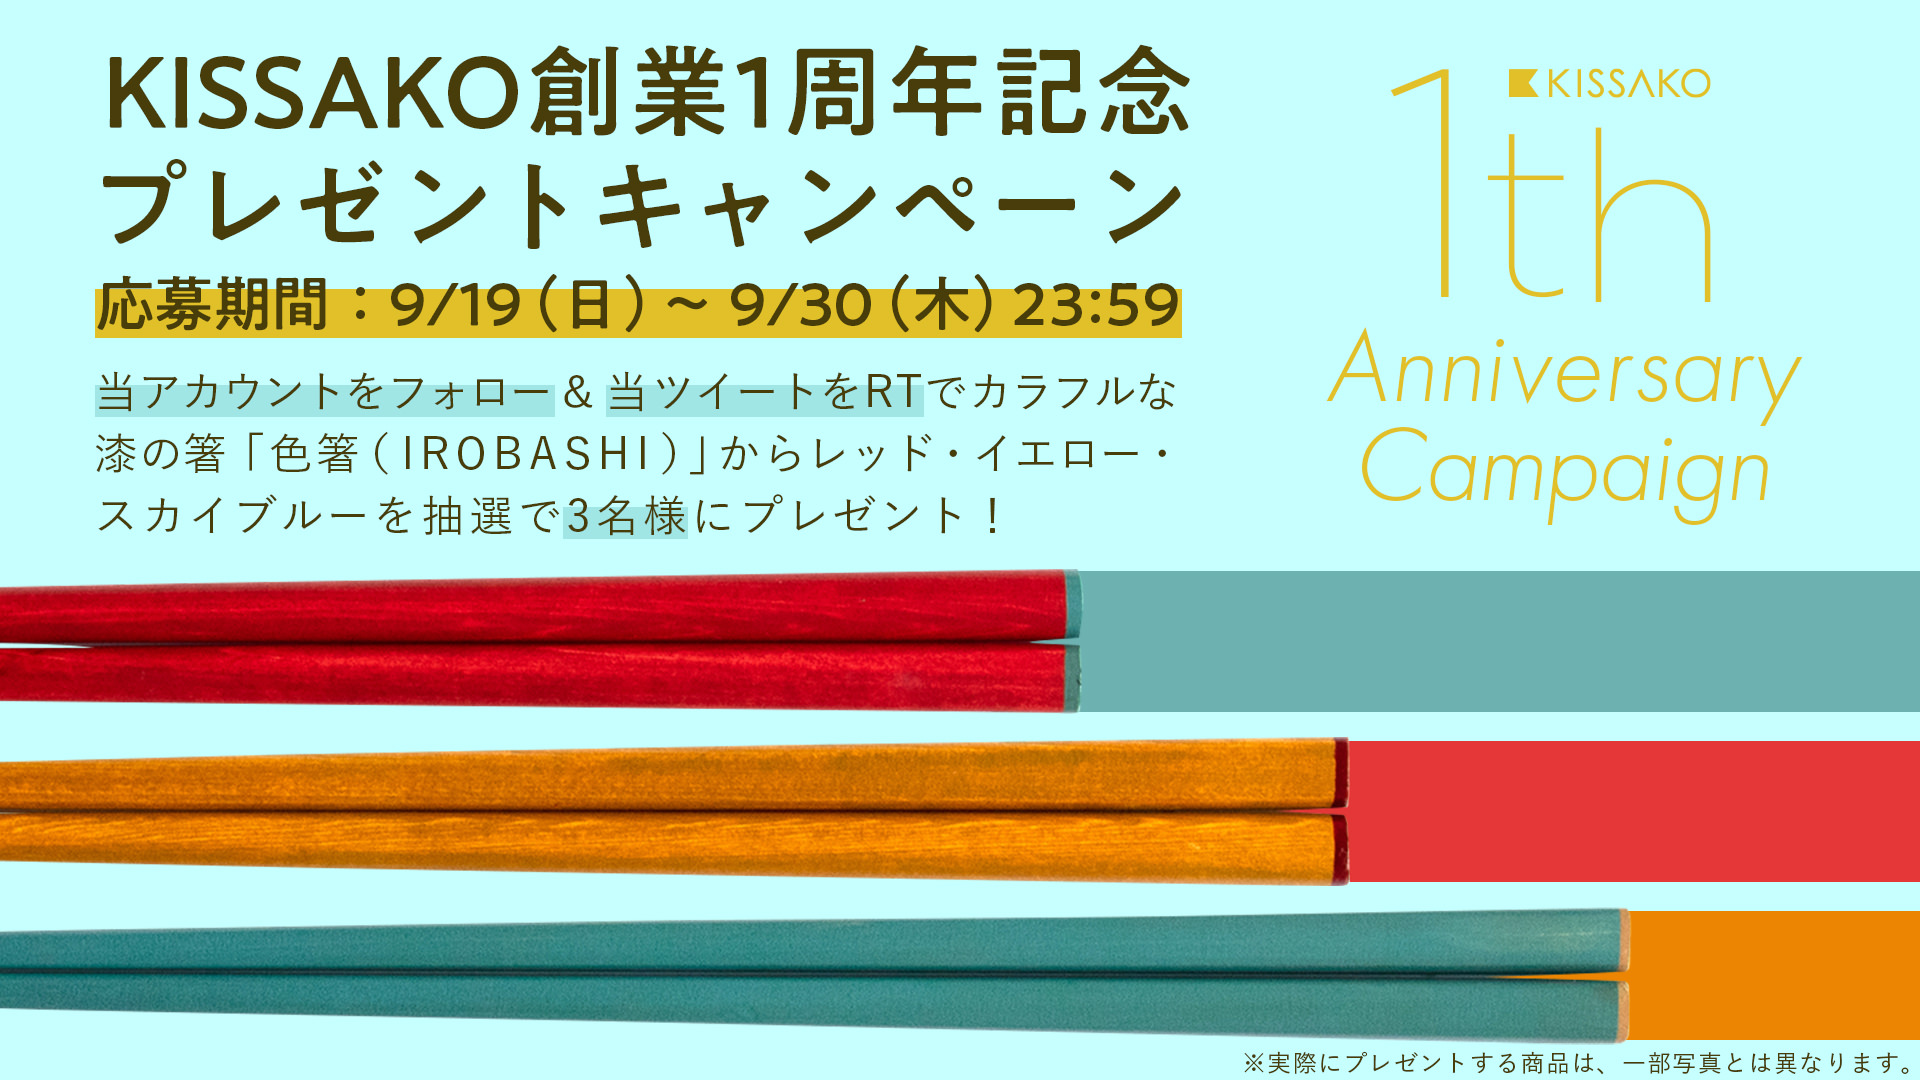 KISSAKO創業1周年記念 プレゼントキャンペーン